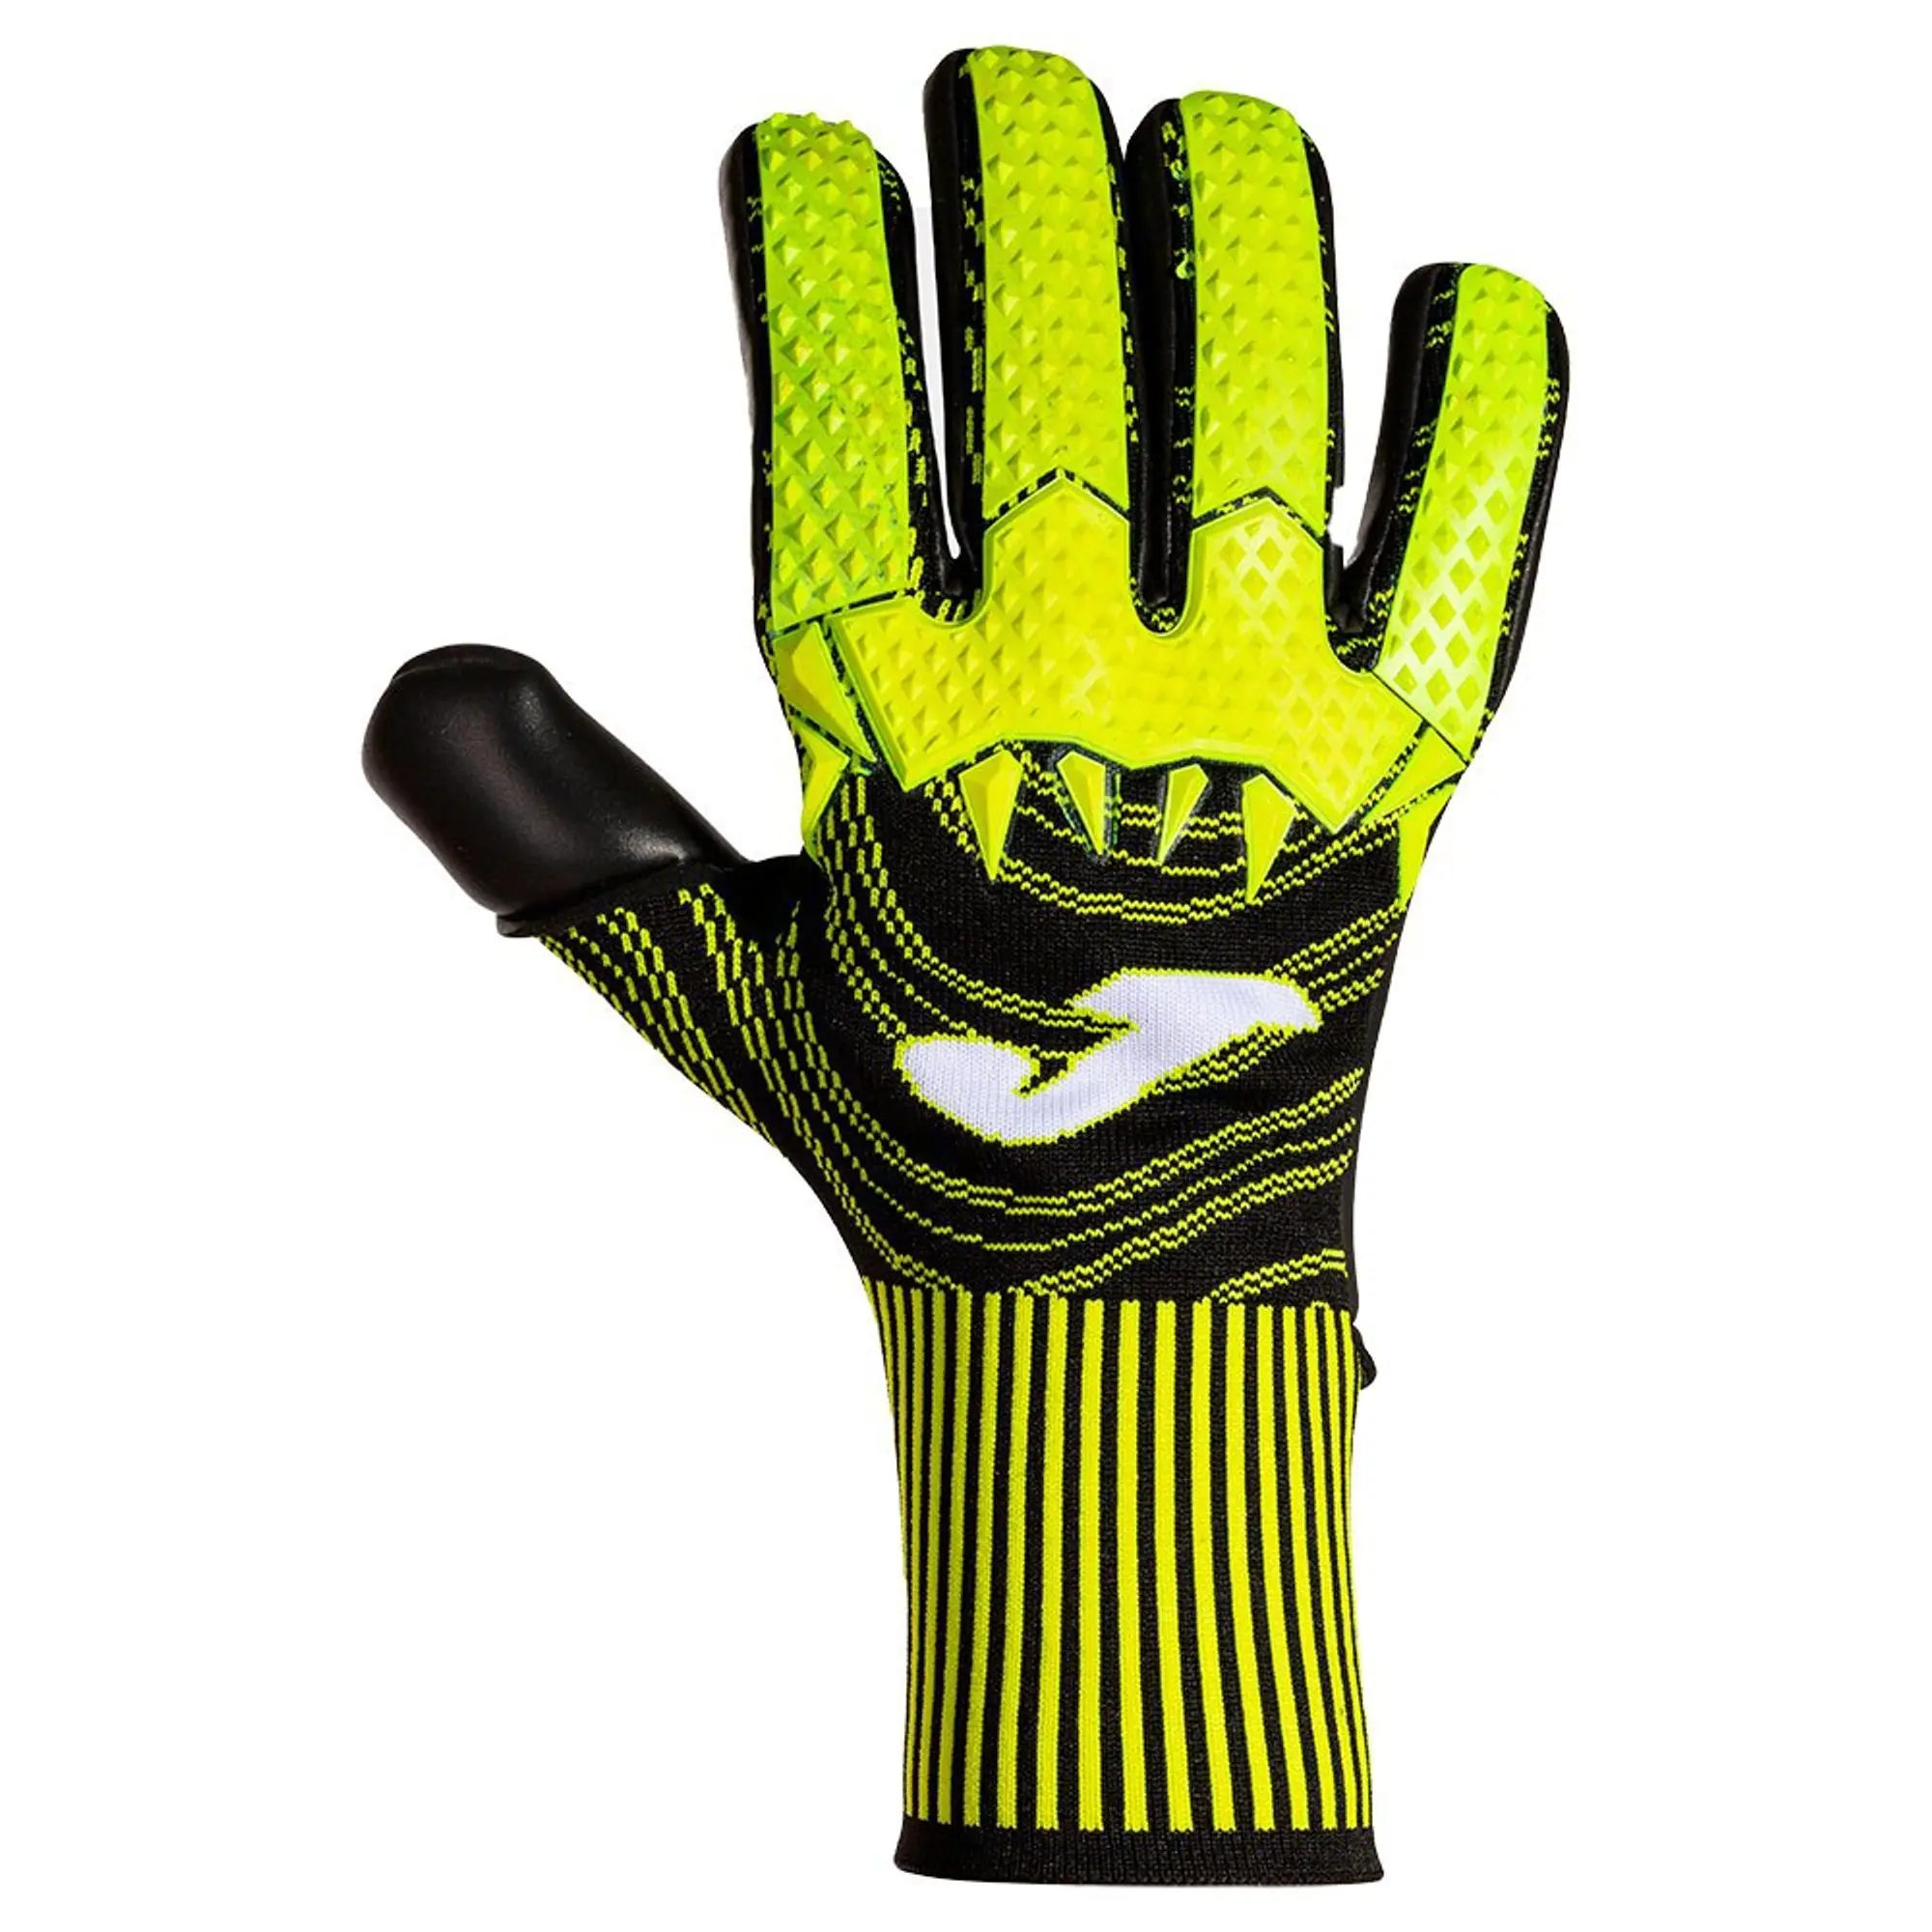 Joma Area 360 Goalkeeper Gloves  - Yellow,Black